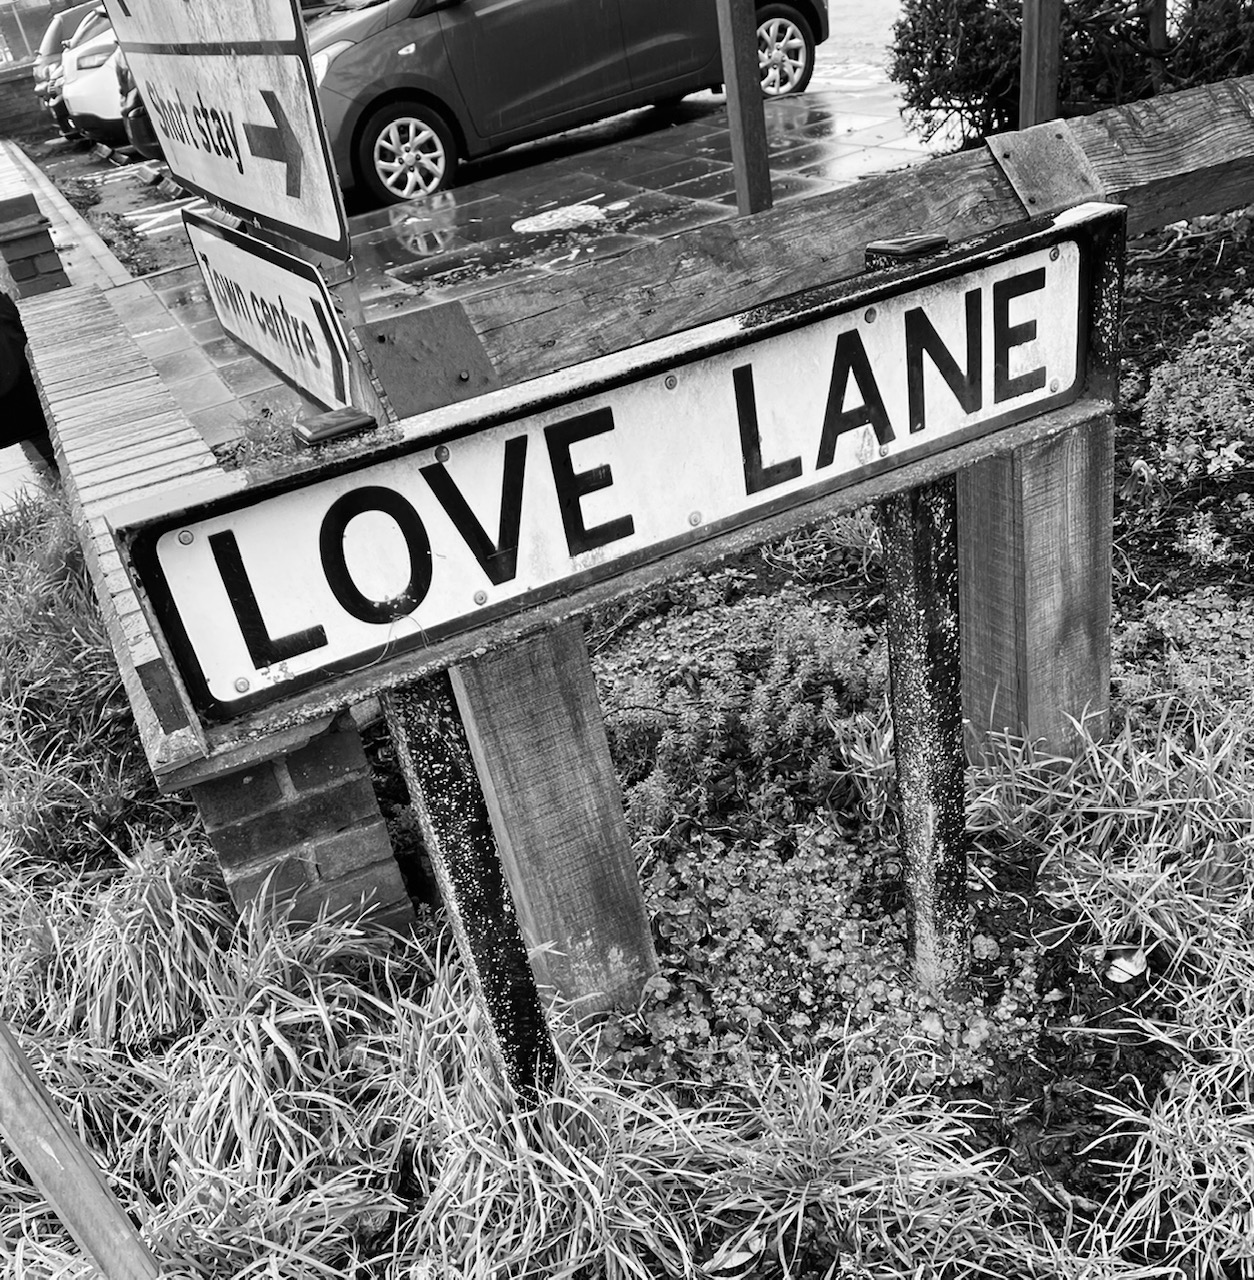 Love Lane - Browns Leaflets